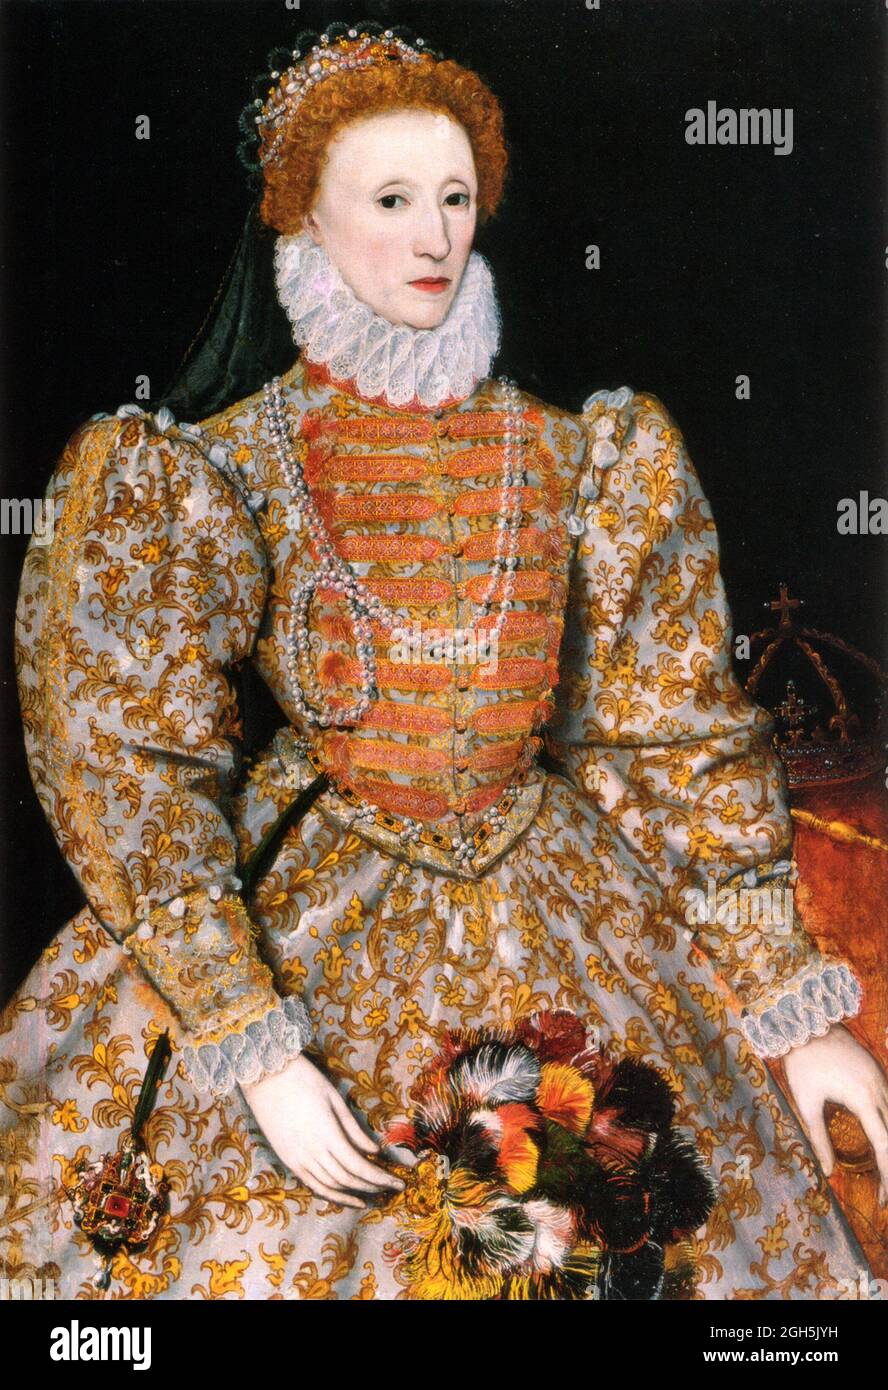 Ein Porträt von Königin Elizabeth I., die von 1558 bis 1603 Königin von England war Stockfoto